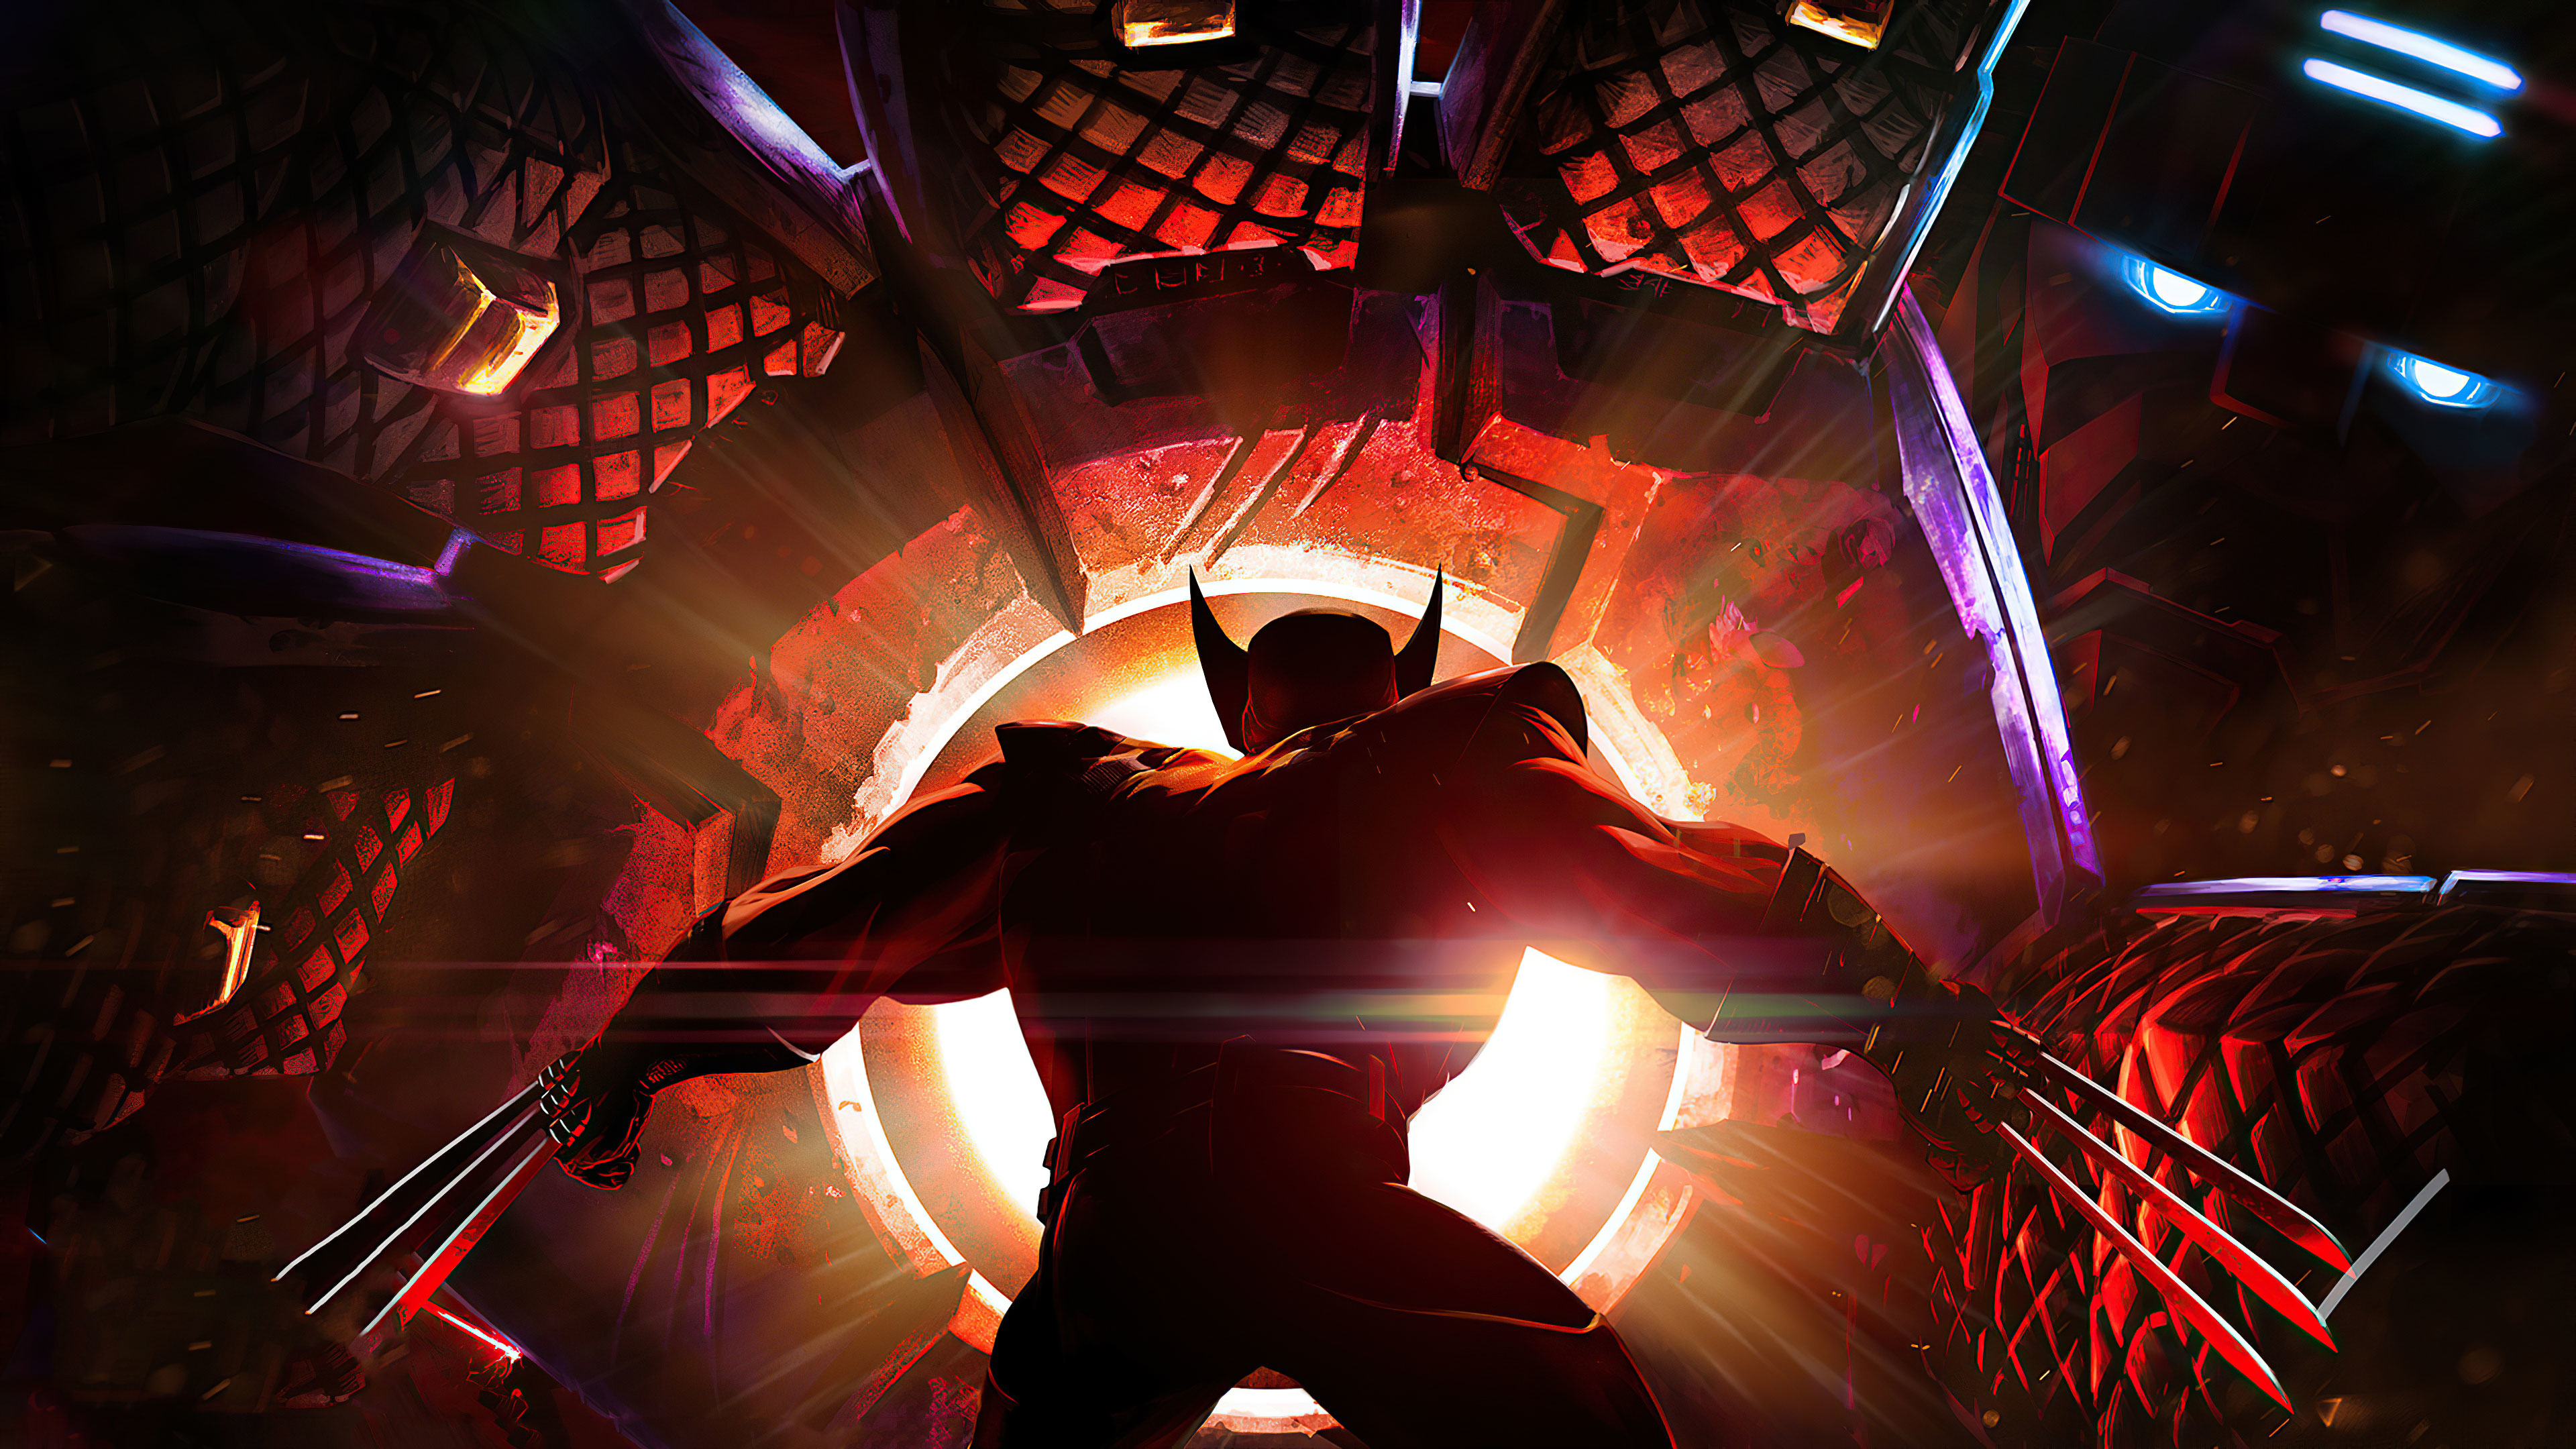 X-Men HD Wallpapers | 4K Backgrounds - Wallpapers Den